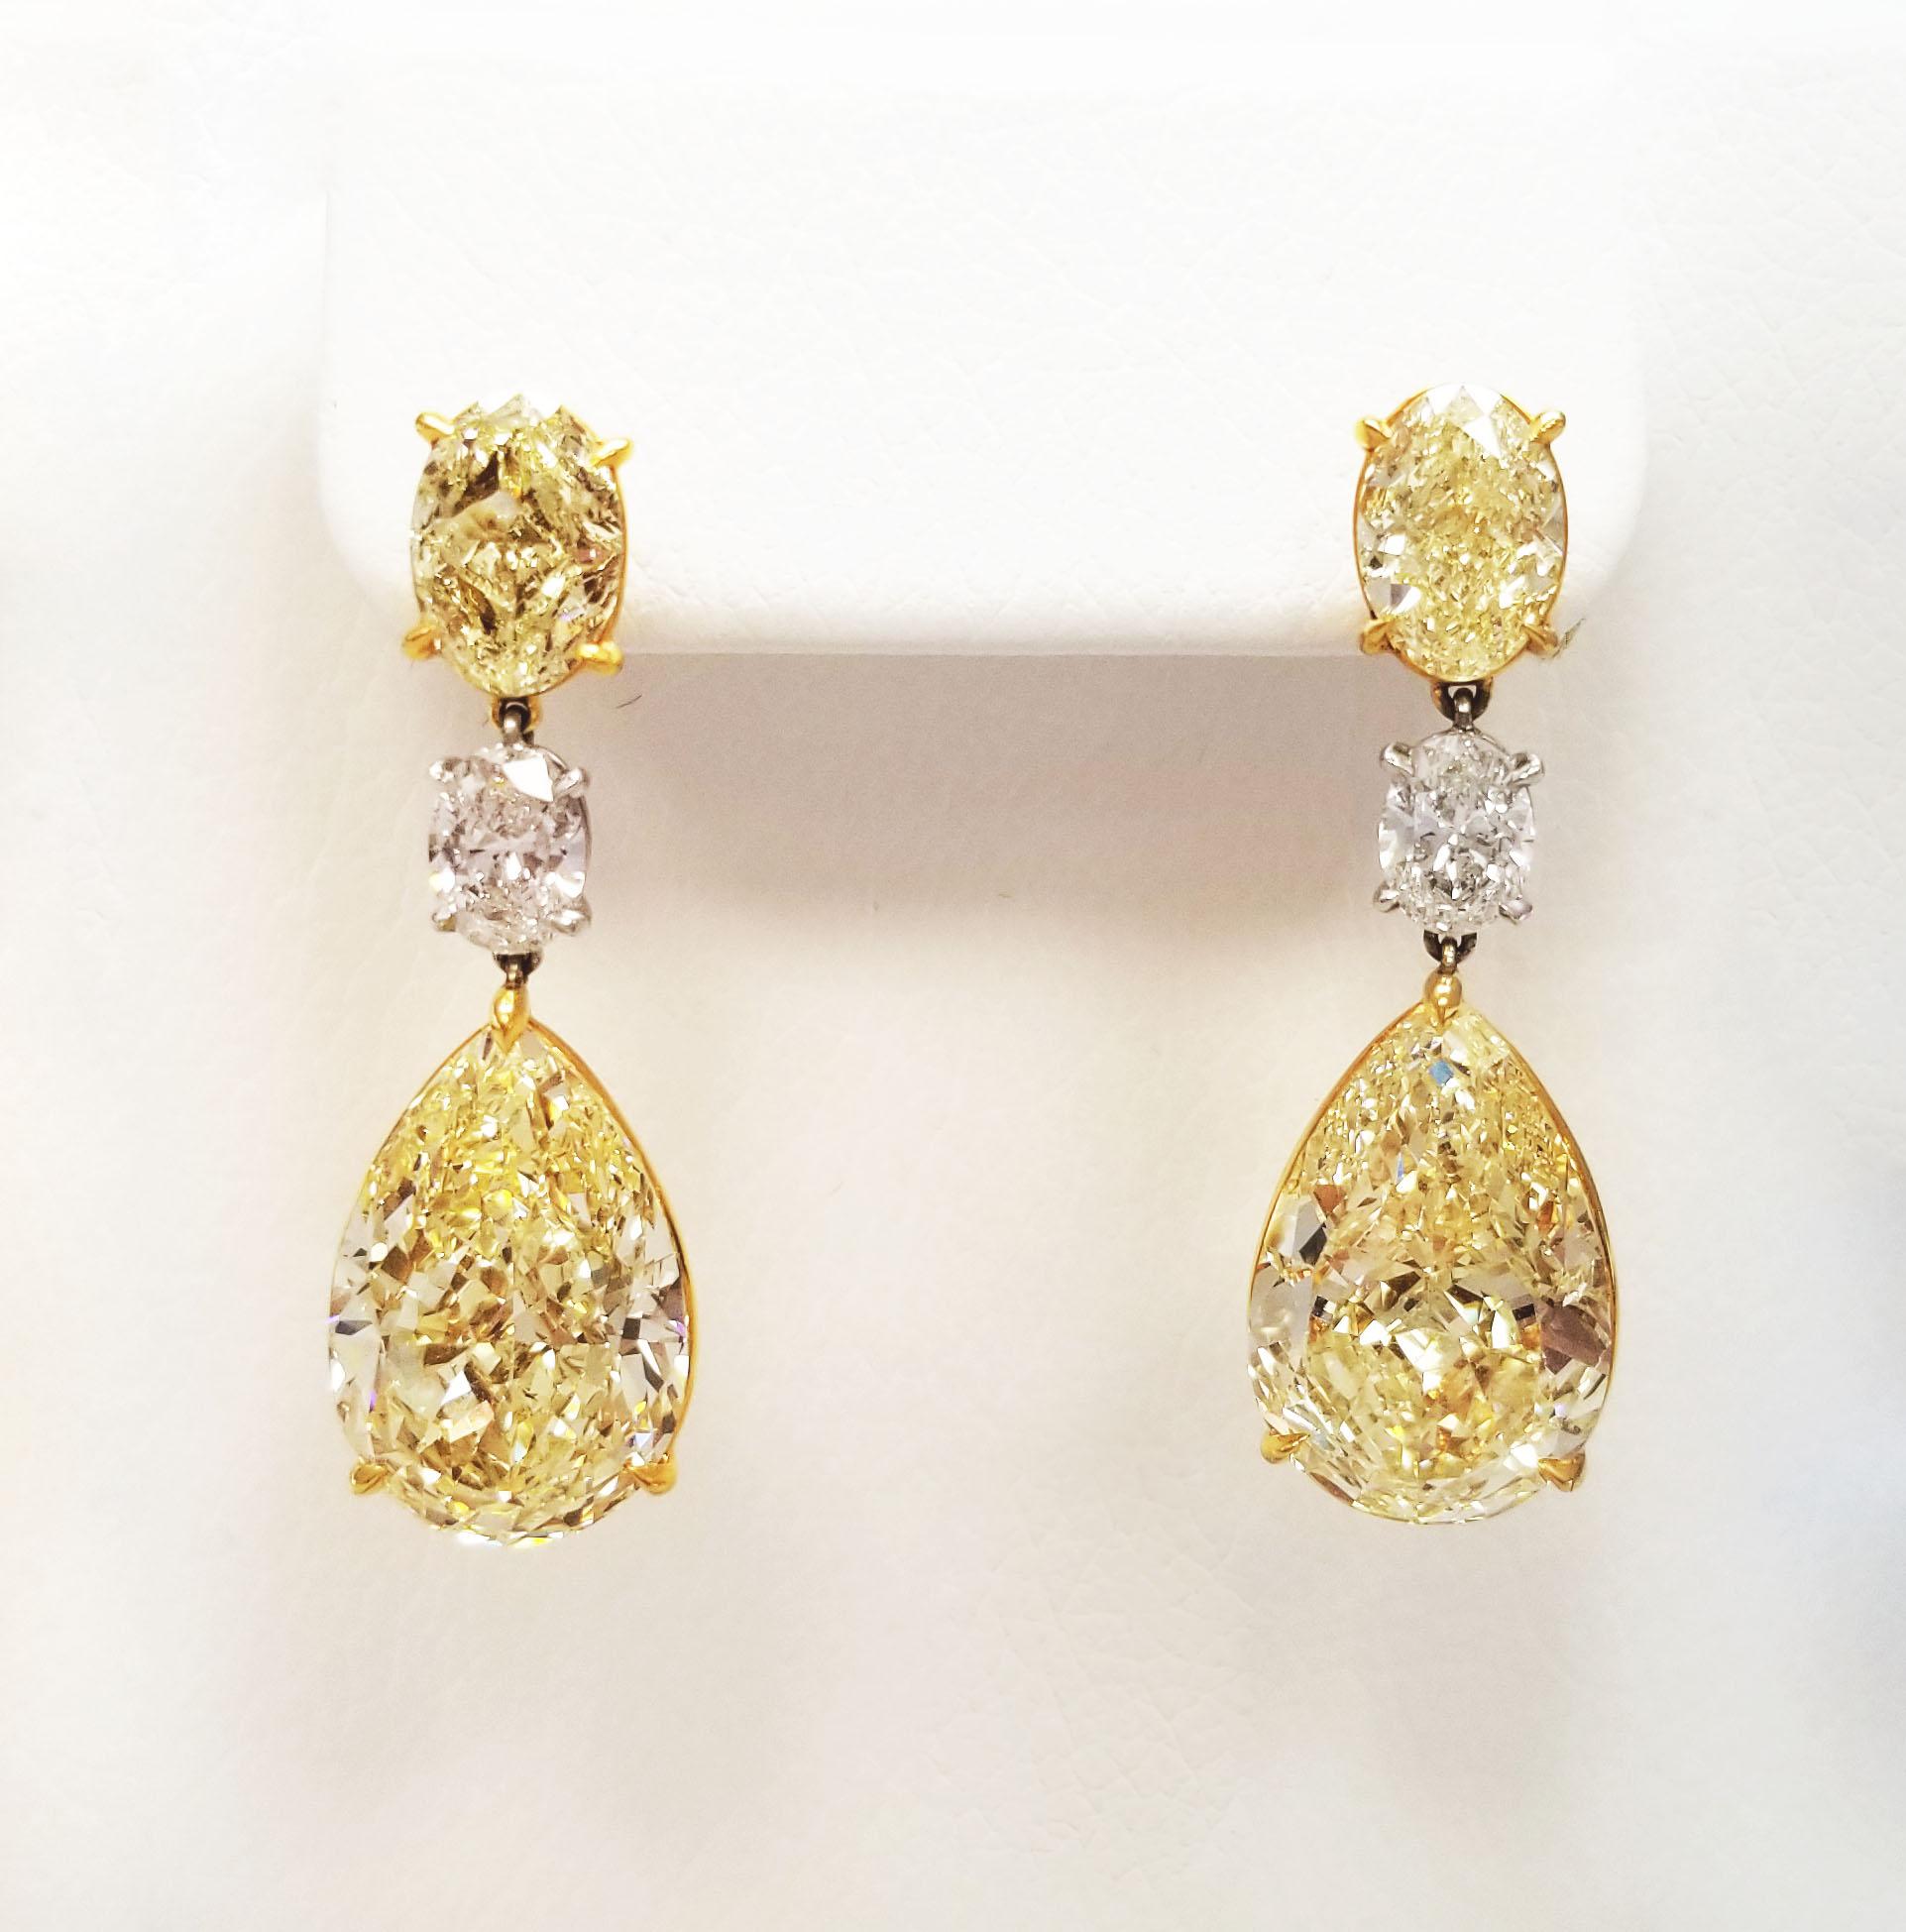 Von SCARSELLI, weltbekannt für natürliche Fancy-Diamanten in Investment-Qualität, kommt dieser 3 Steine baumelnden Ohrringe GIA zertifiziert: 2 zusammenpassende Paare in Fancy Yellow Birnenform von je 8+ Karat, wunderschön geschliffen für blendende